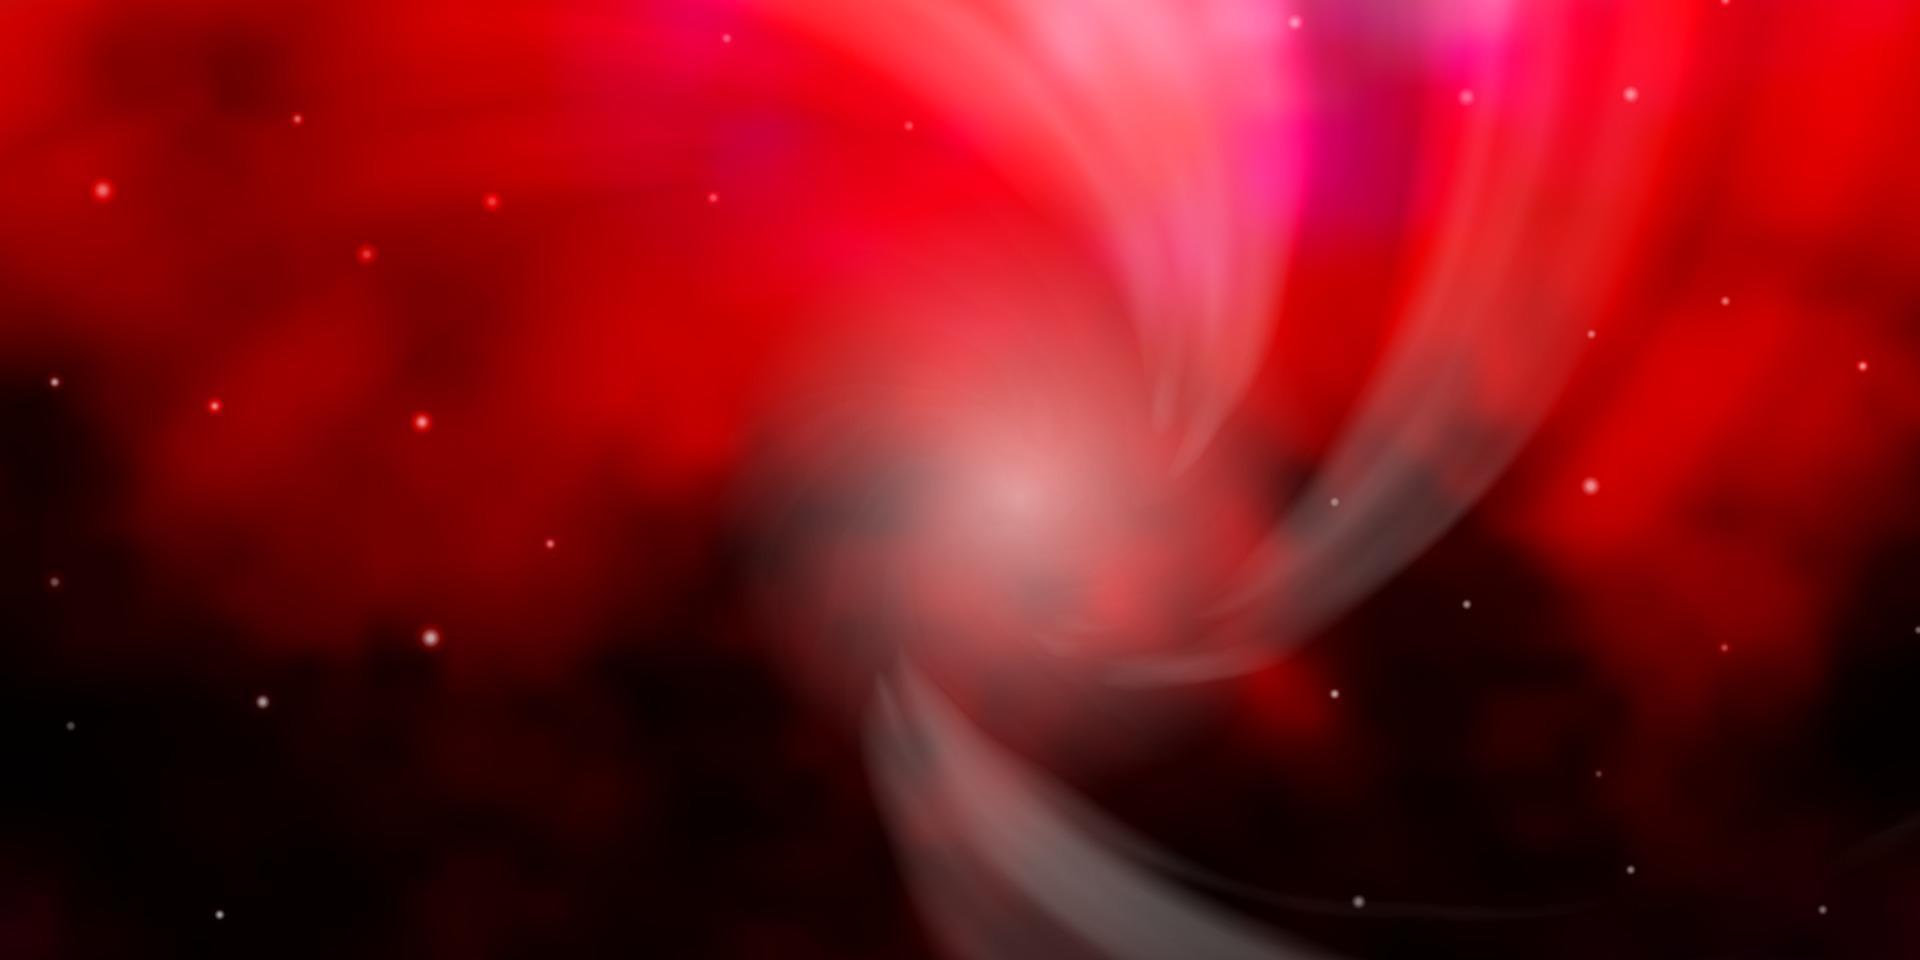 disposition de vecteur rose foncé, rouge avec des étoiles brillantes.